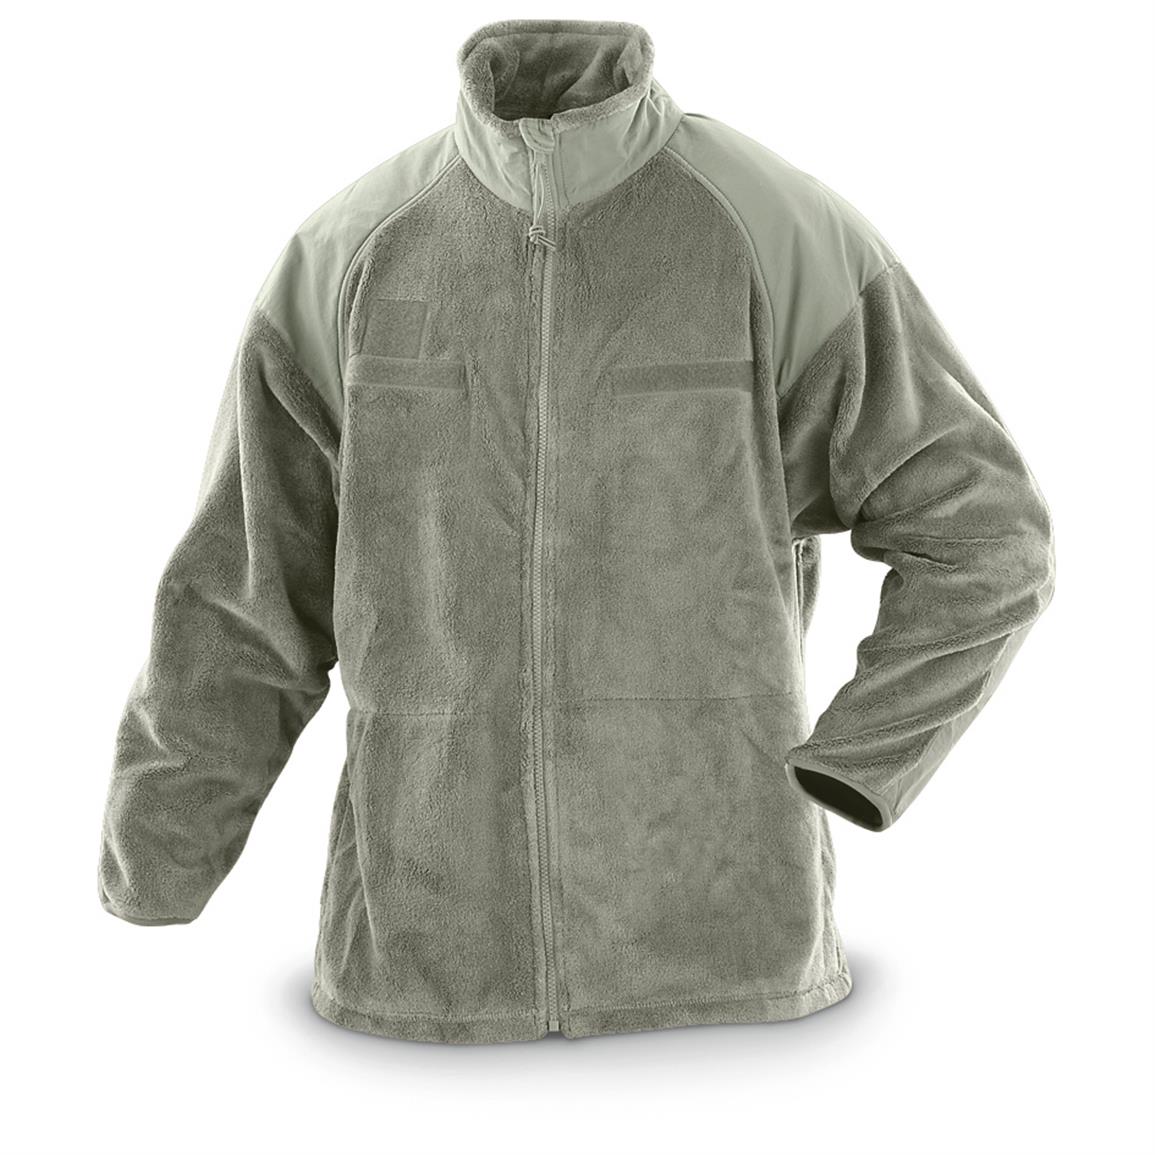 US Army Gen III Polartec Level 3 Fleece Jacket  XS-XL Short Reg & Tall Sizes 